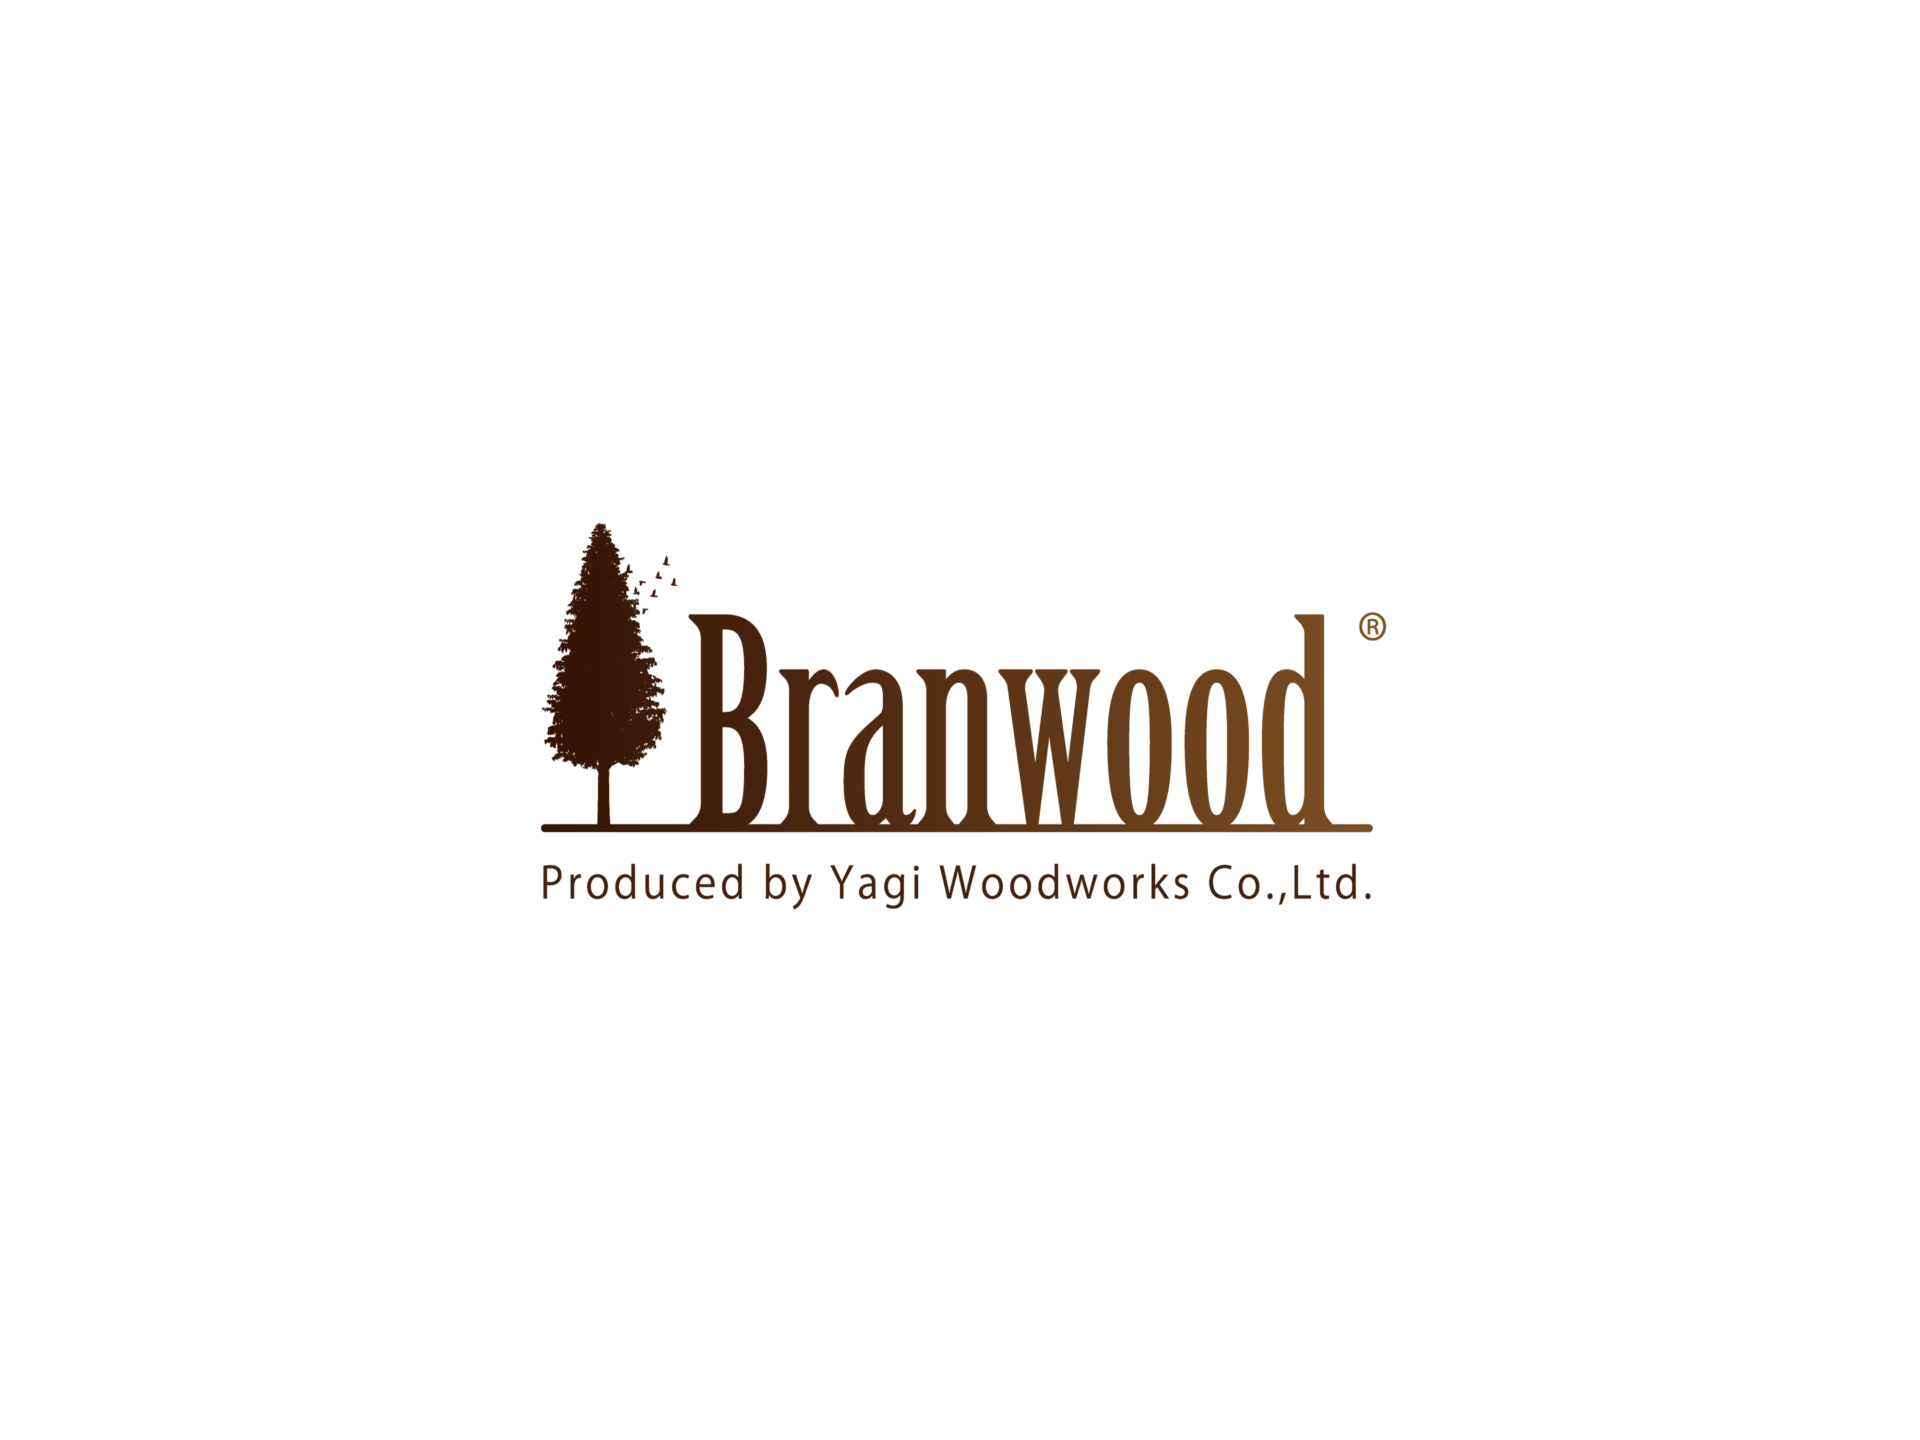 Branwood logo /プロダクトデザイン&ブランドデザイン事務所アドリアカンパニー